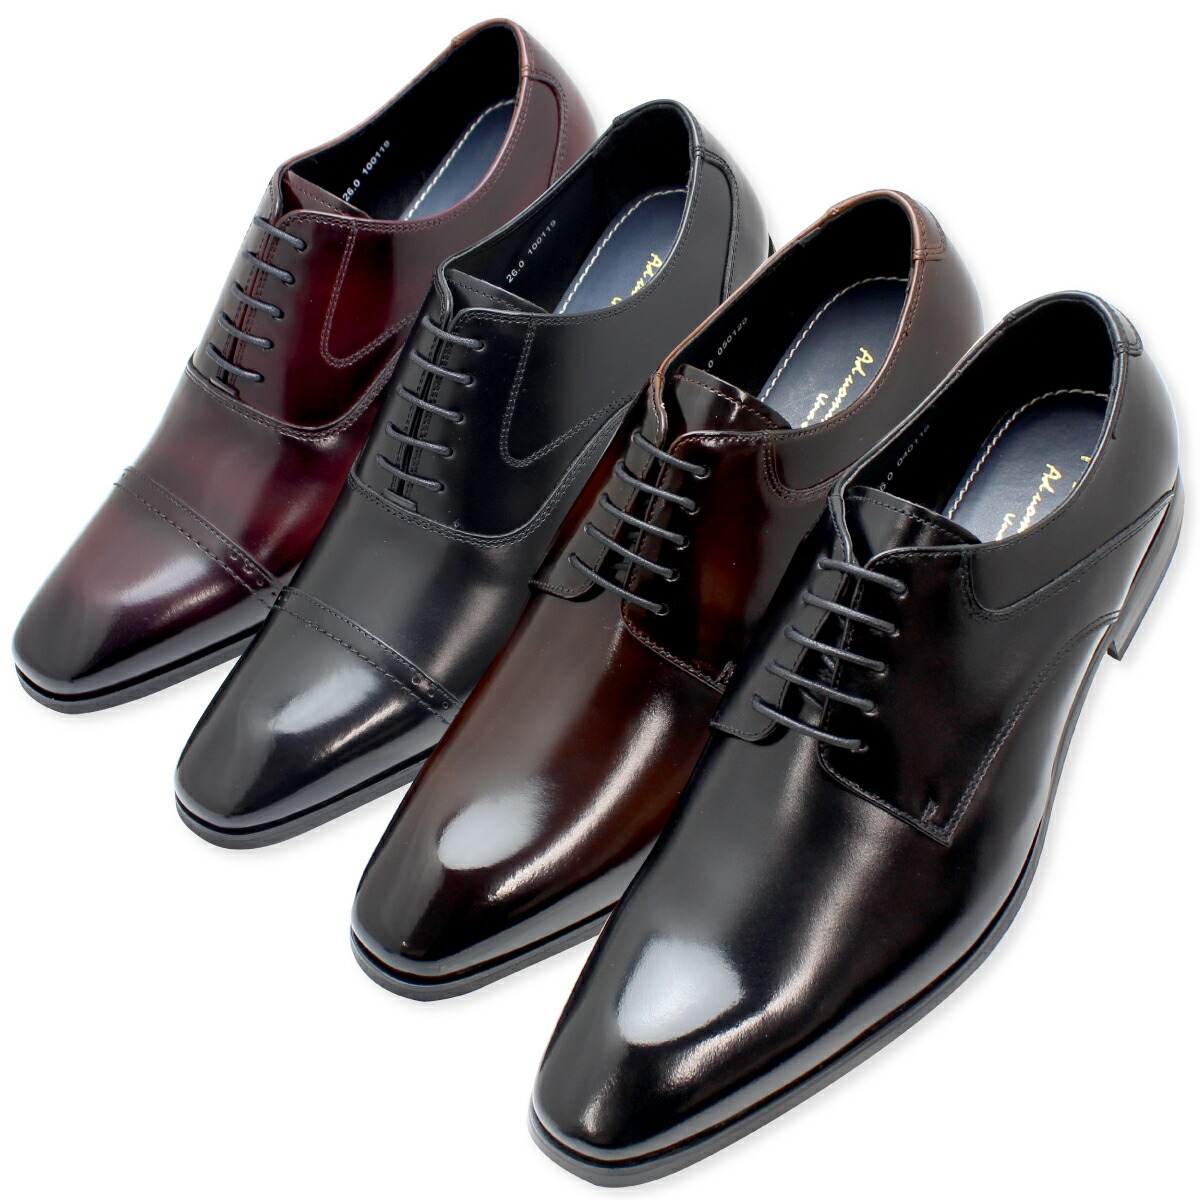 適当な価格適当な価格フランコルッチ 日本製 本革 ビジネスシューズ メンズ 紳士靴 プレーントゥ ストレートチップ 送料無料 2750 2751  メンズ靴